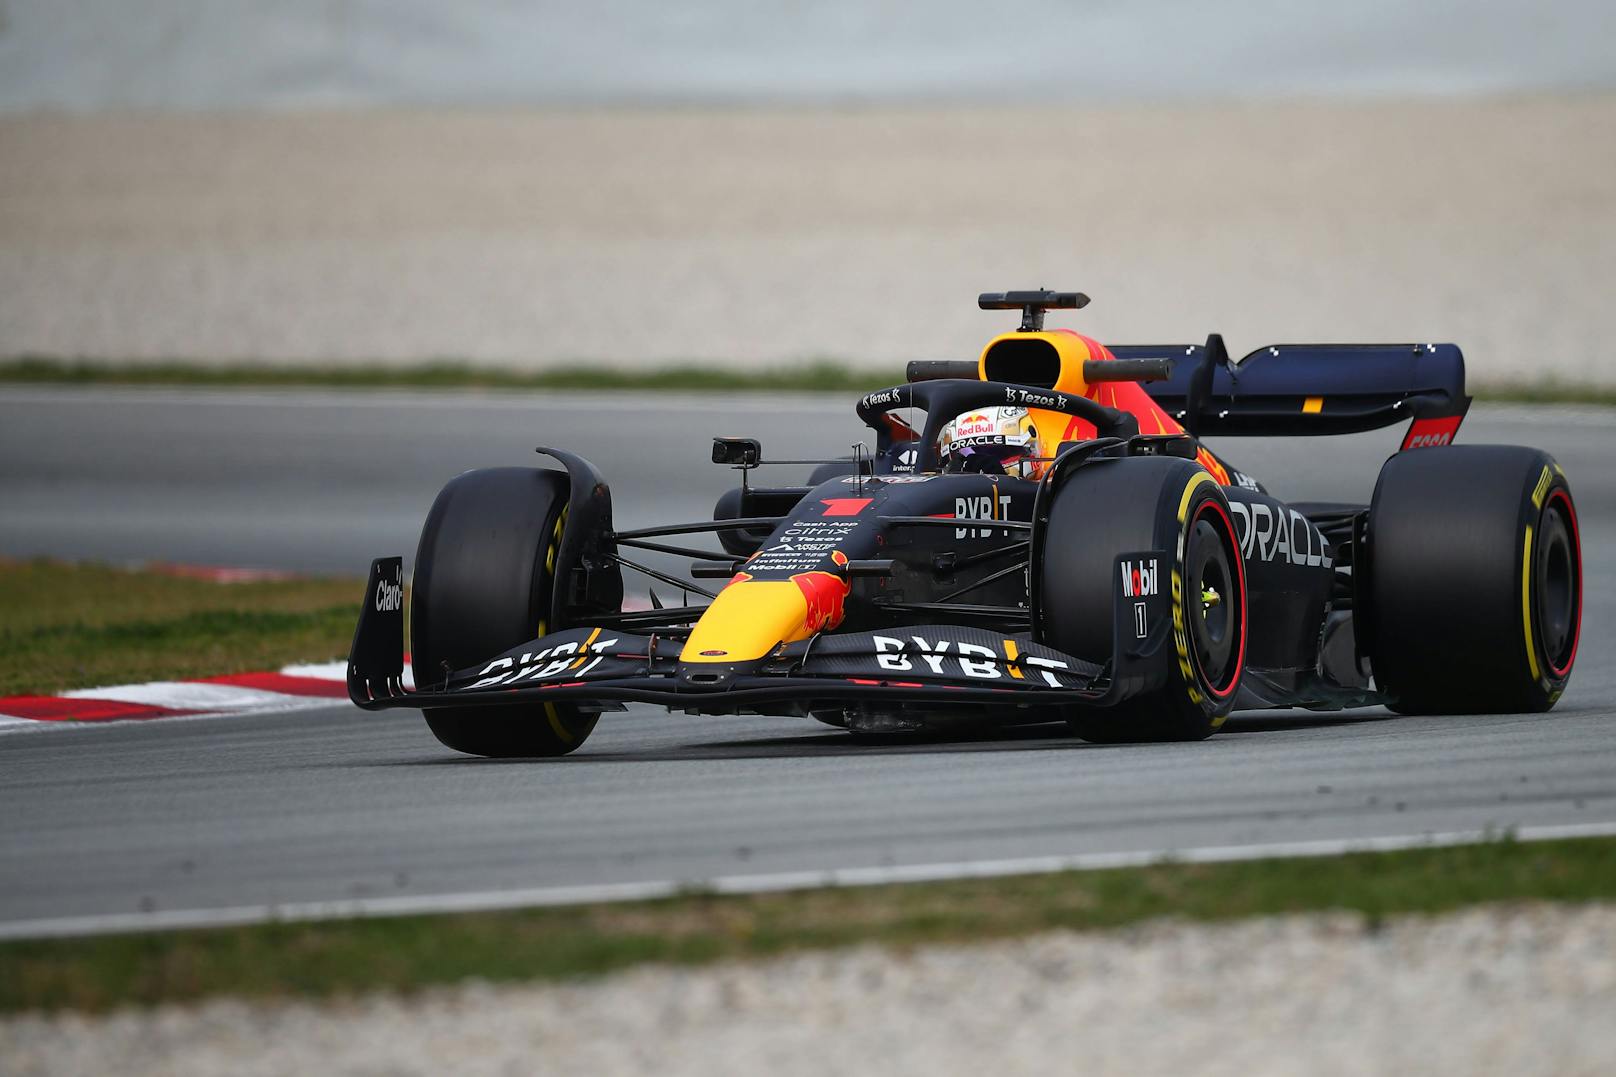 Weltmeister Max Verstappen und Sergio Perez im klassischen Red-Bull-Design